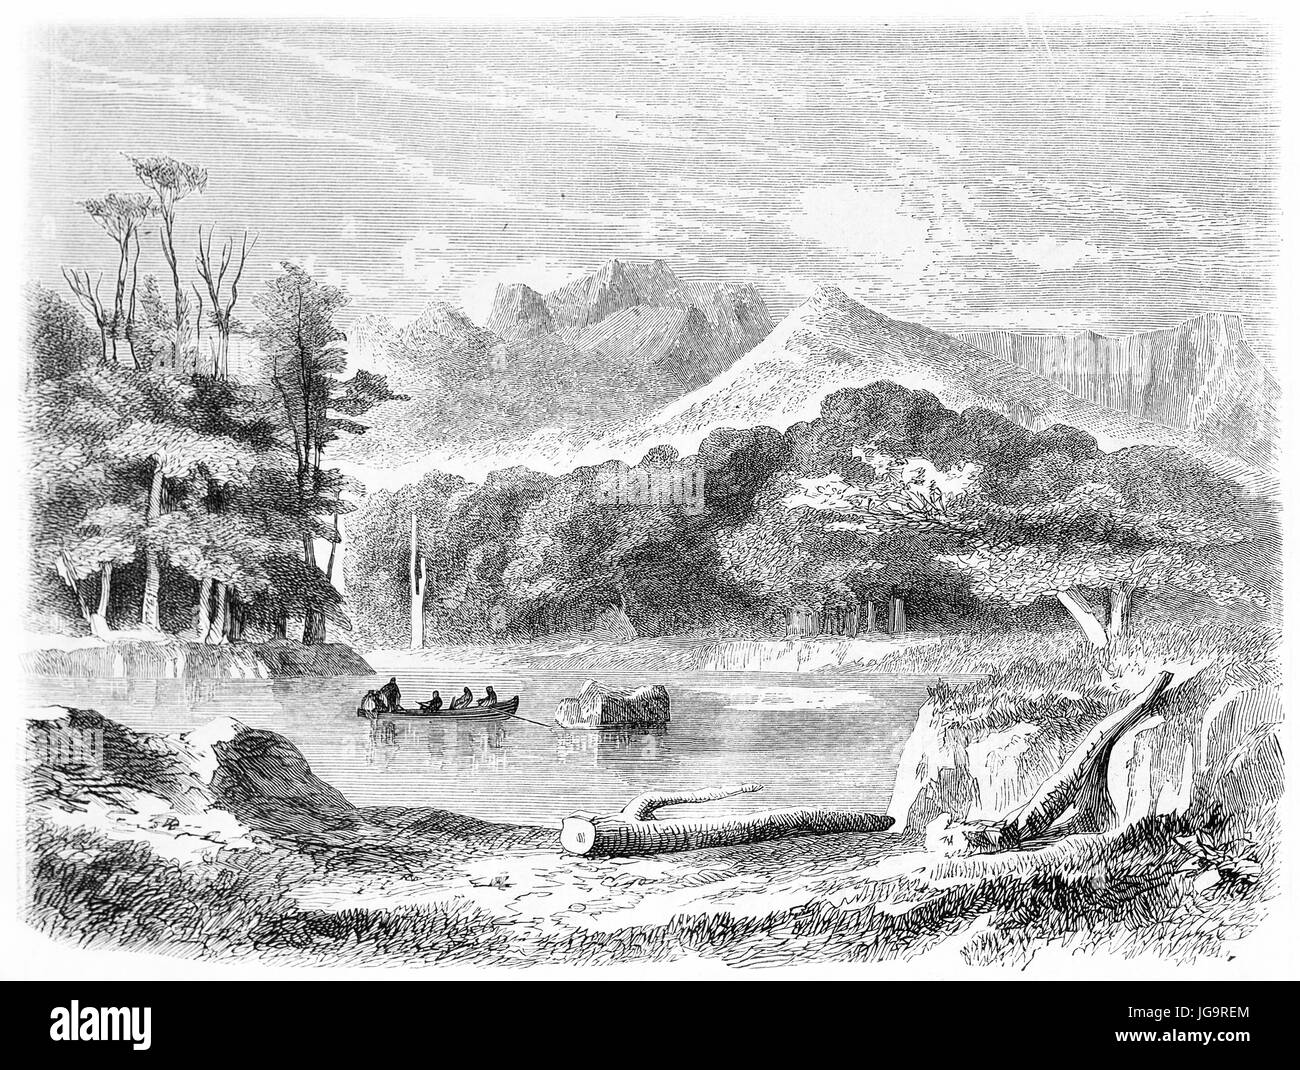 Vecchia illustrazione del fiume Gennes, Cile. Creato da De Bèrard, pubblicato in Le Tour du Monde, Parigi, 1861 Foto Stock